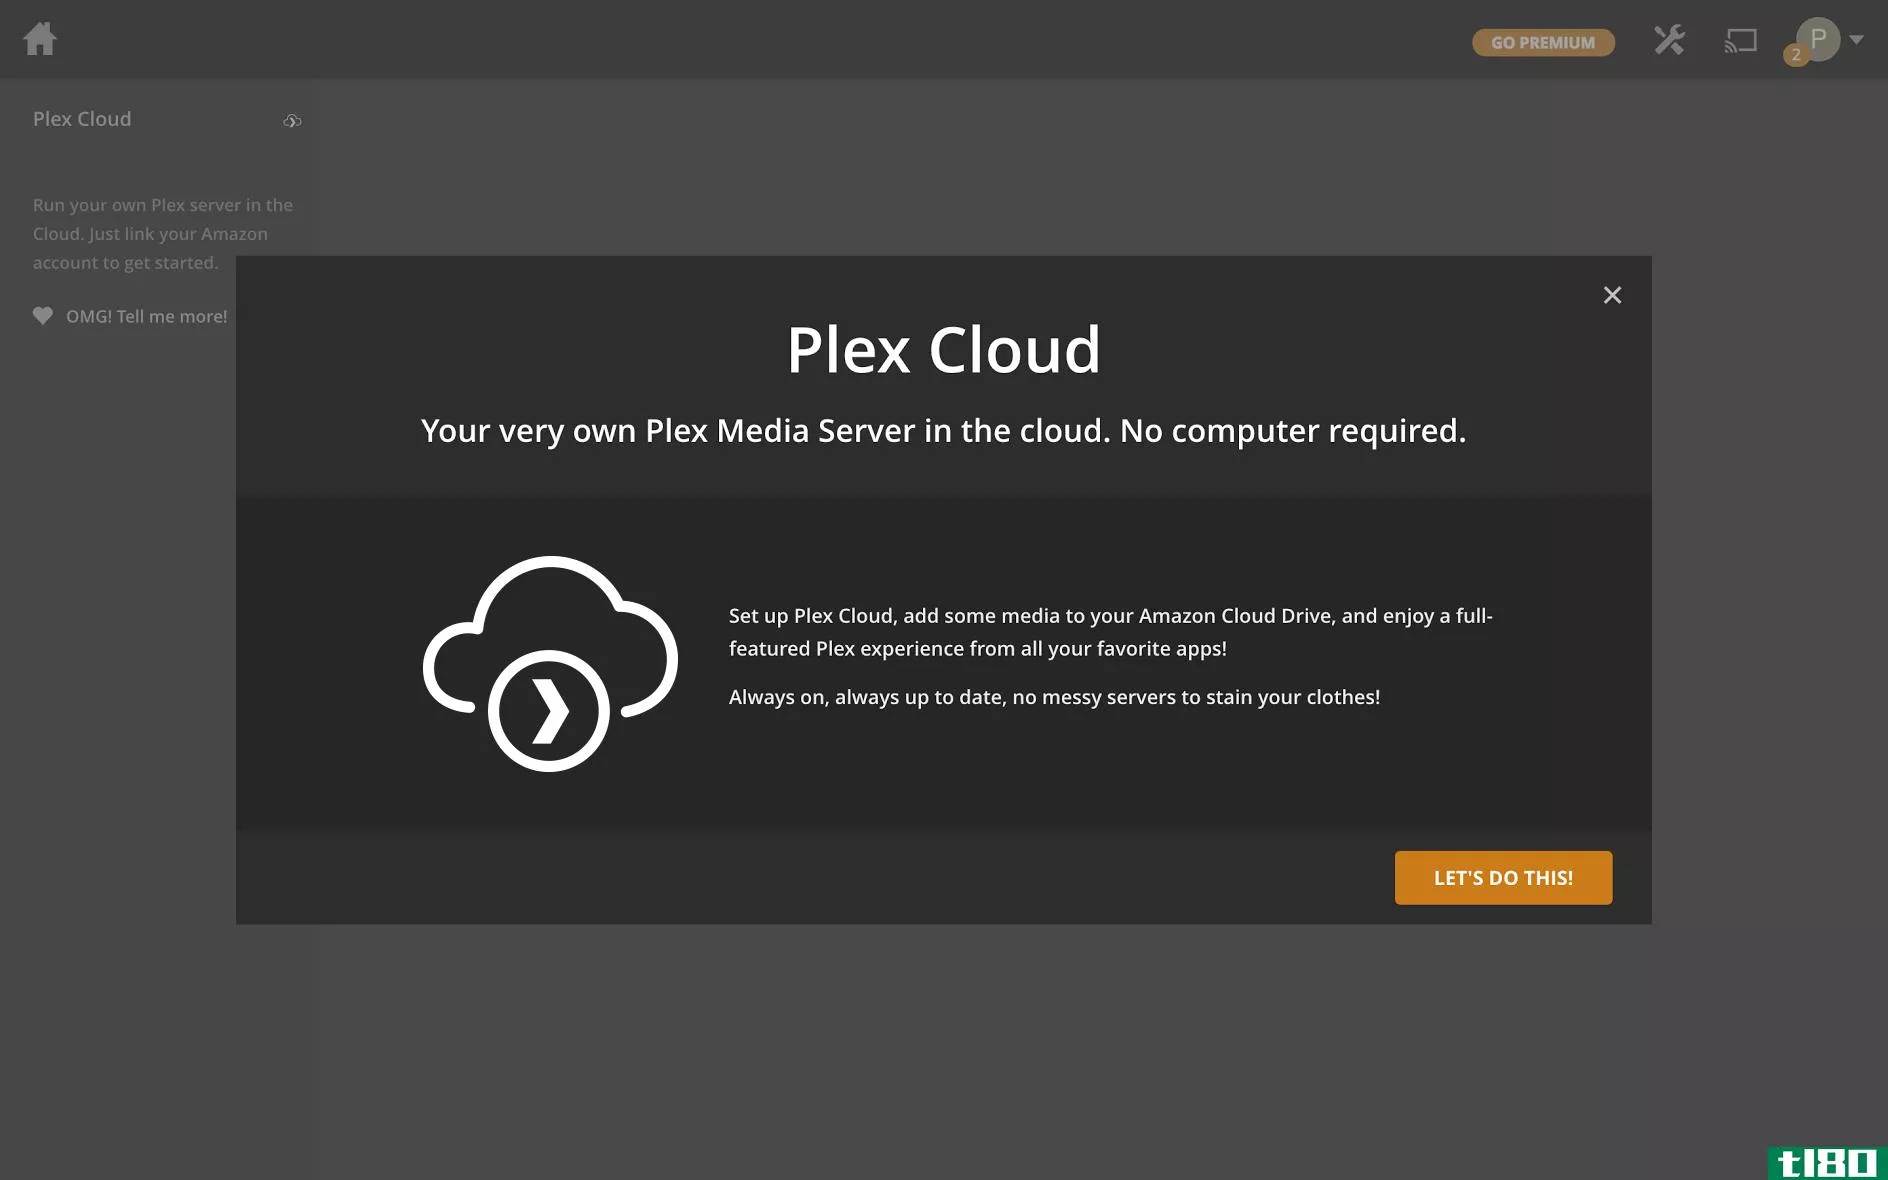 plex云意味着告别永远在线的pc